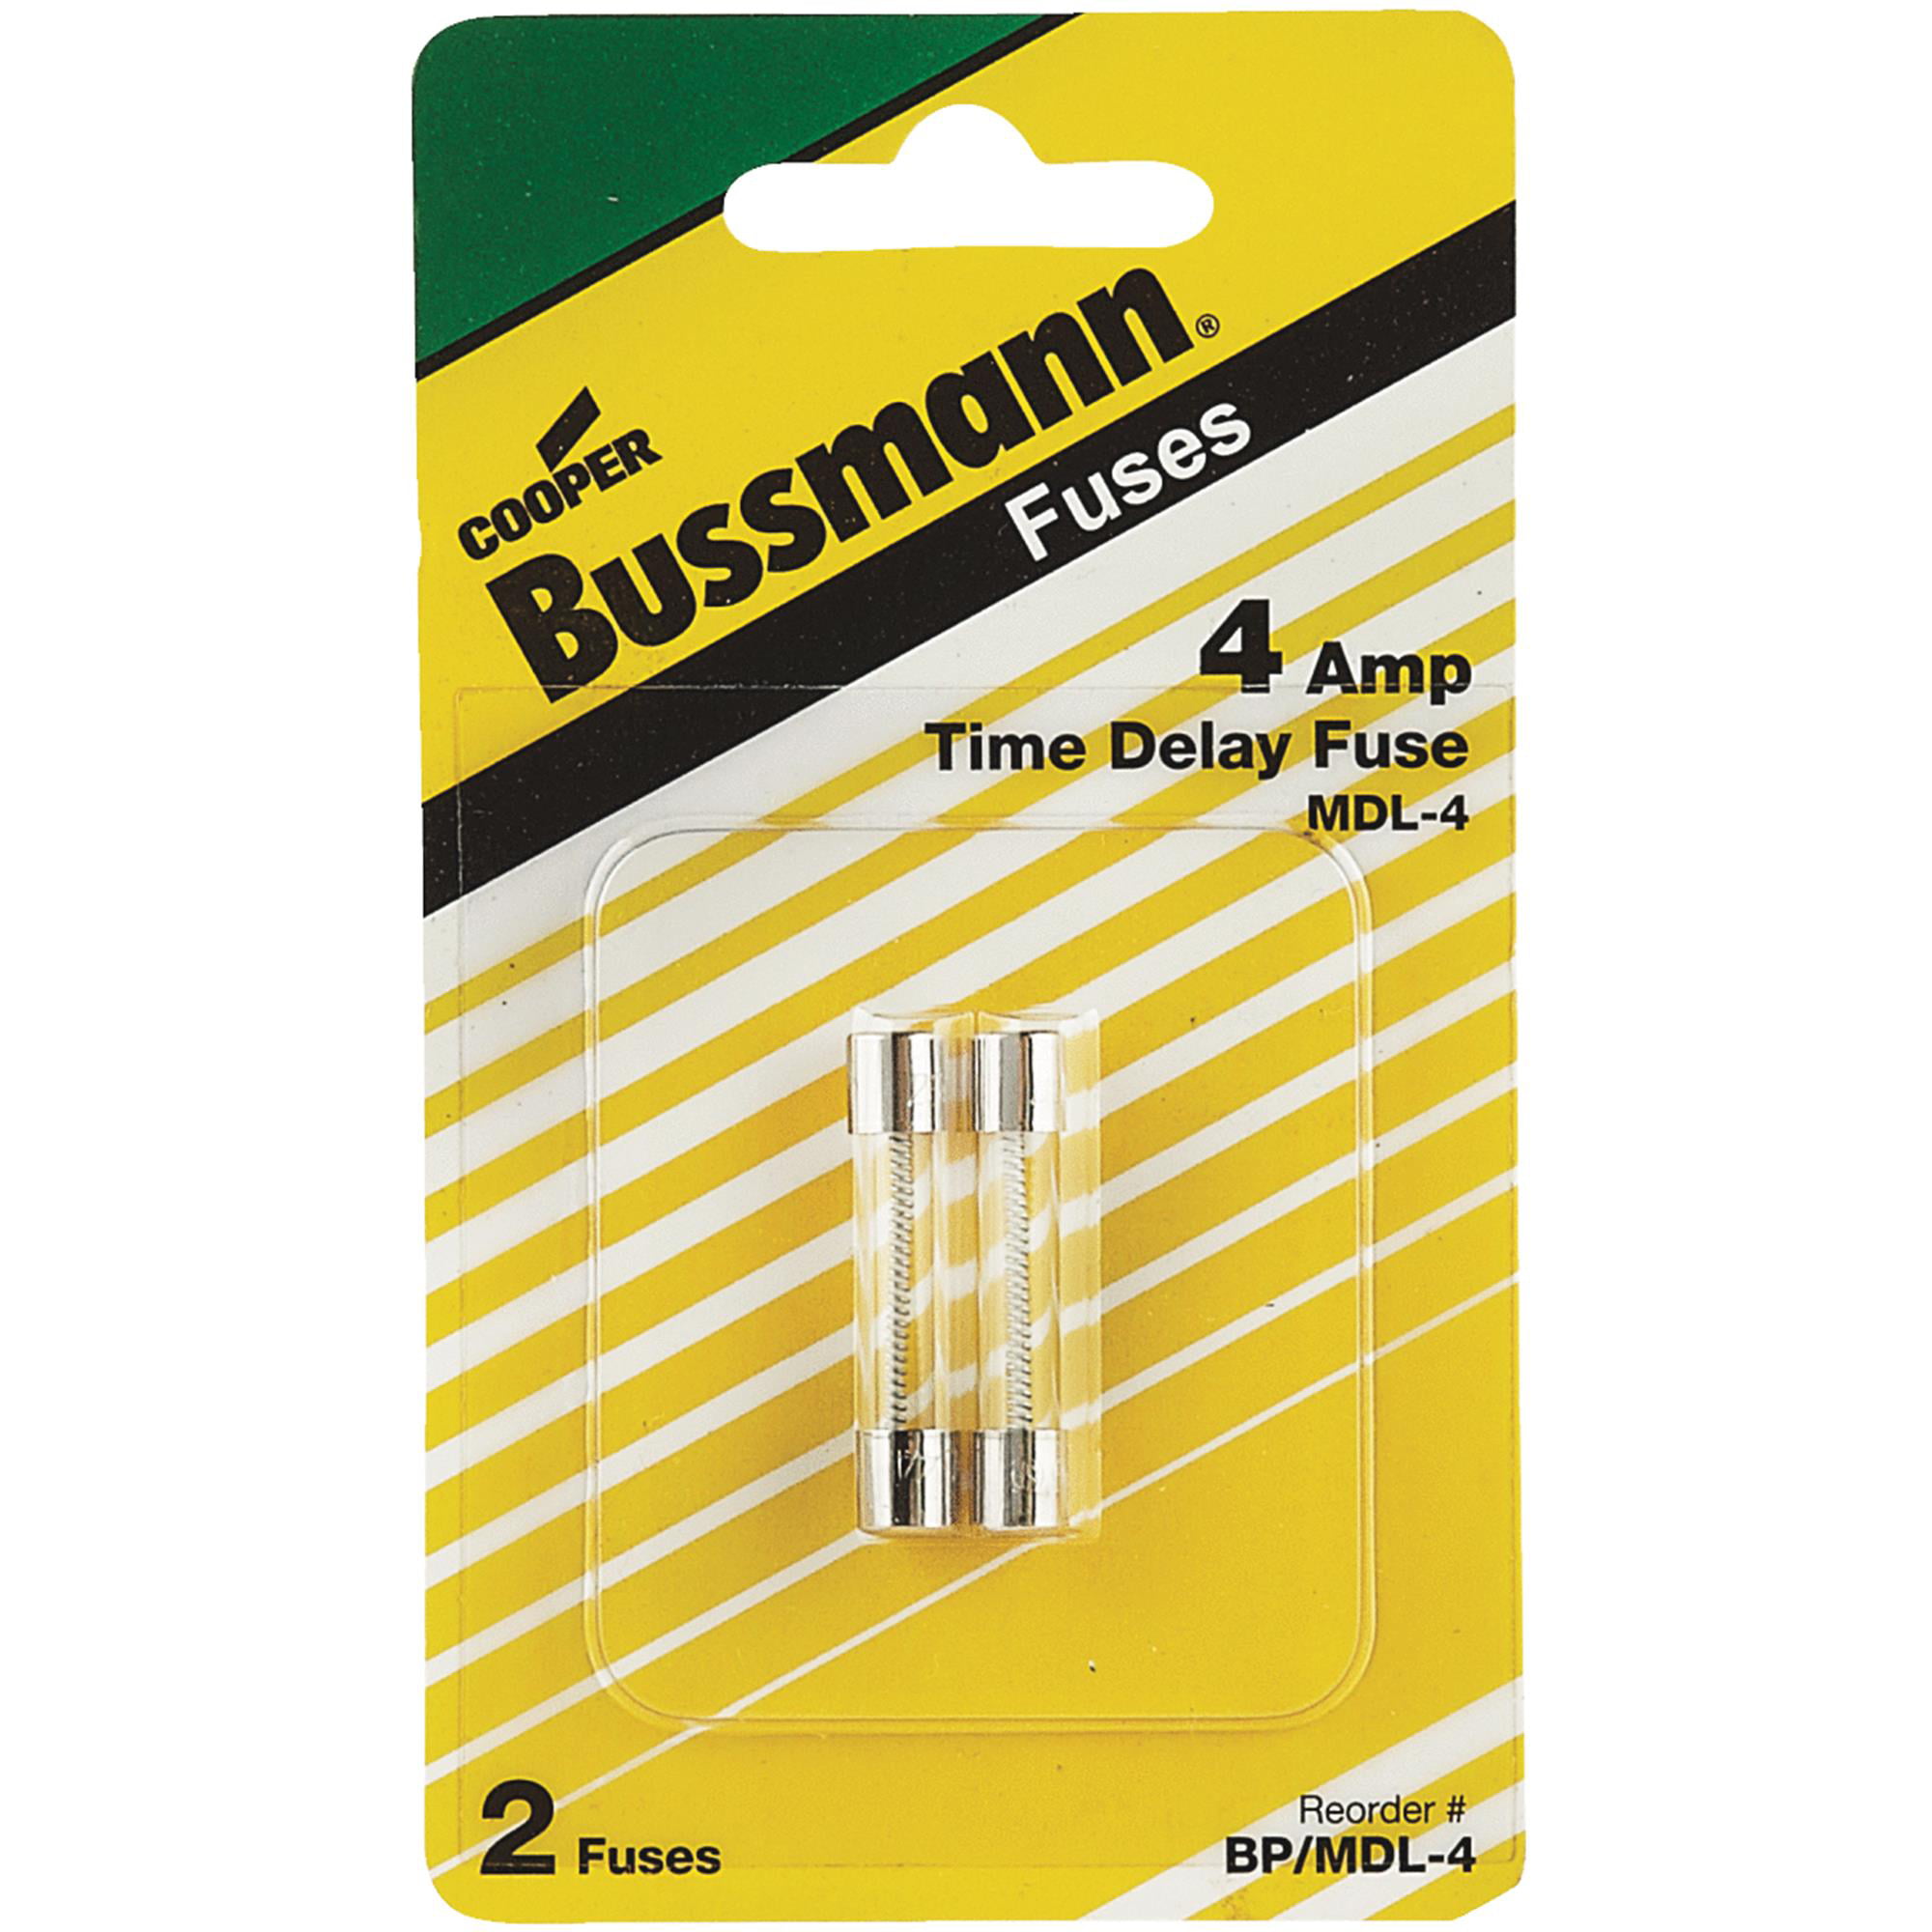 5 pack Slo-blo Bussmann MDL-1 Glass Fuse 1 Amp 250 Volt Time Delay